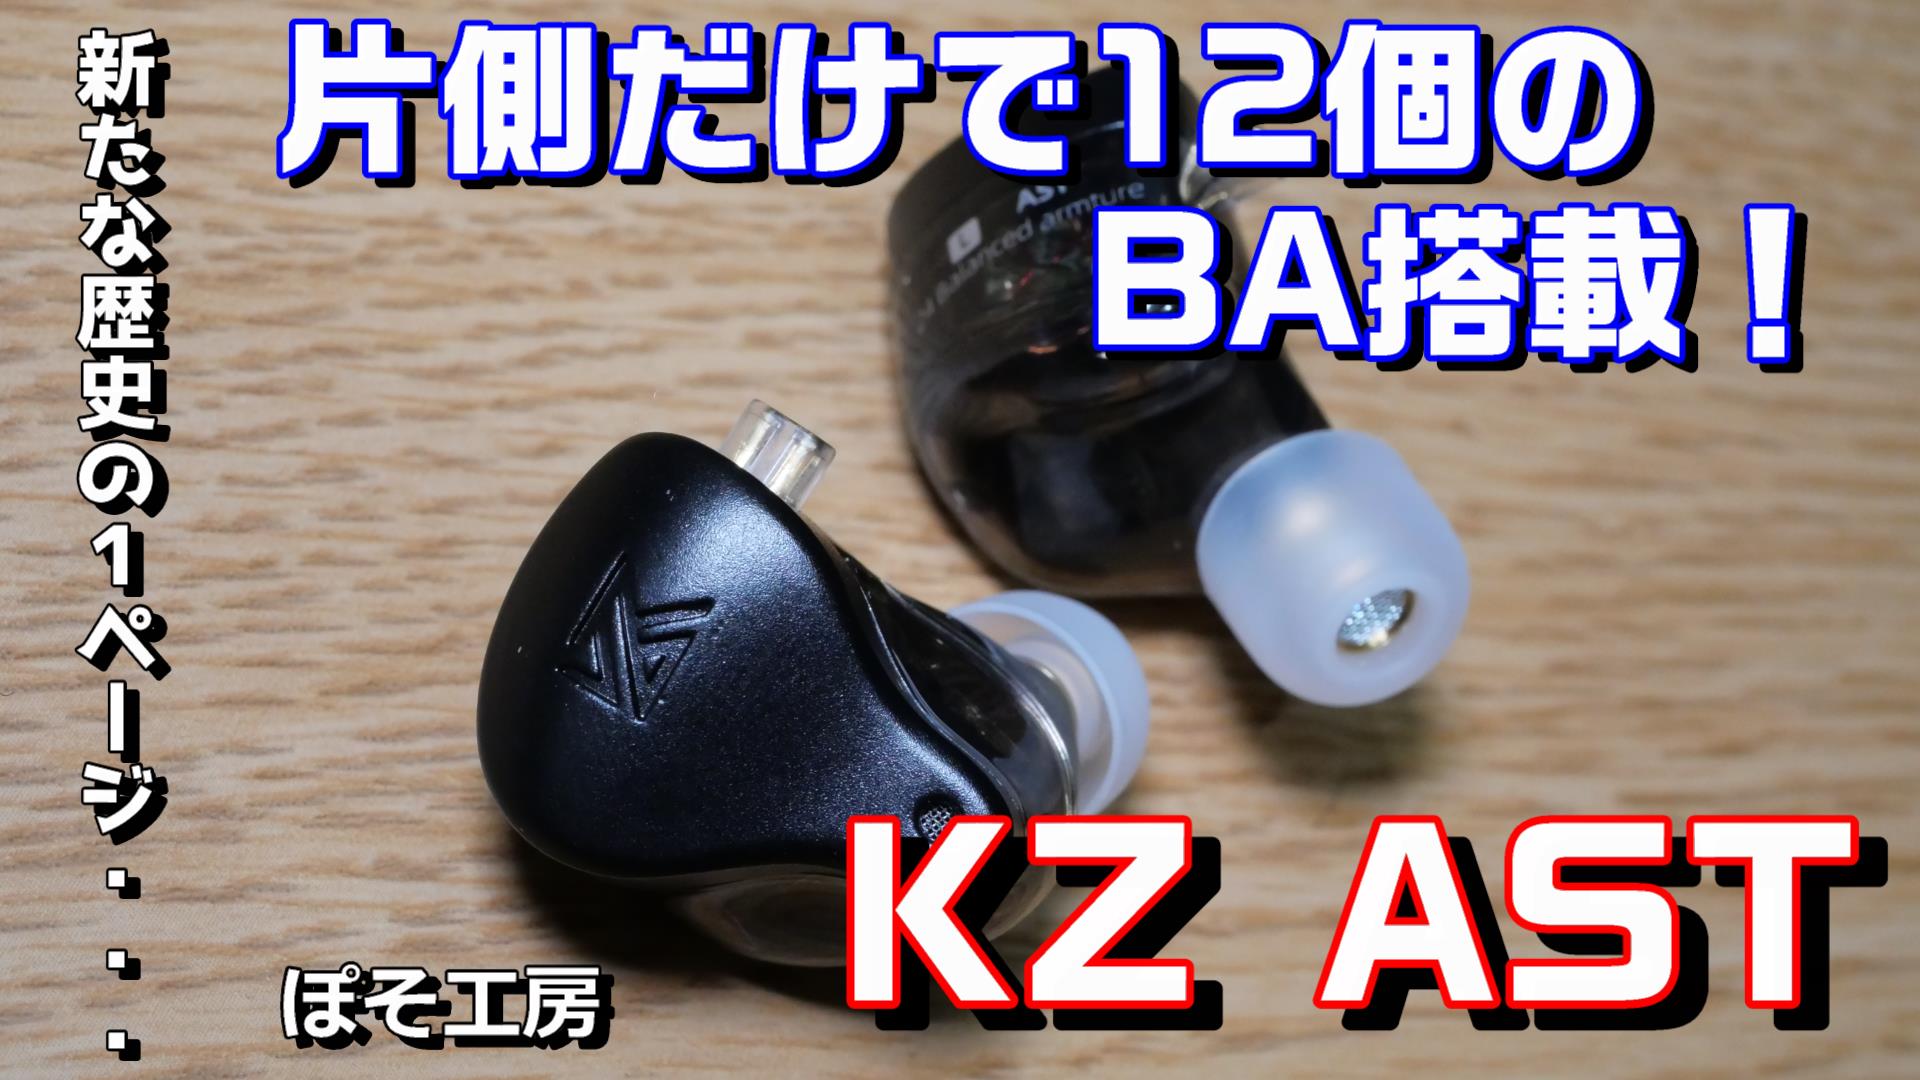 KZ AST】KZから24BA搭載のイヤホンが発売。片側だけでも12個のBAを搭載